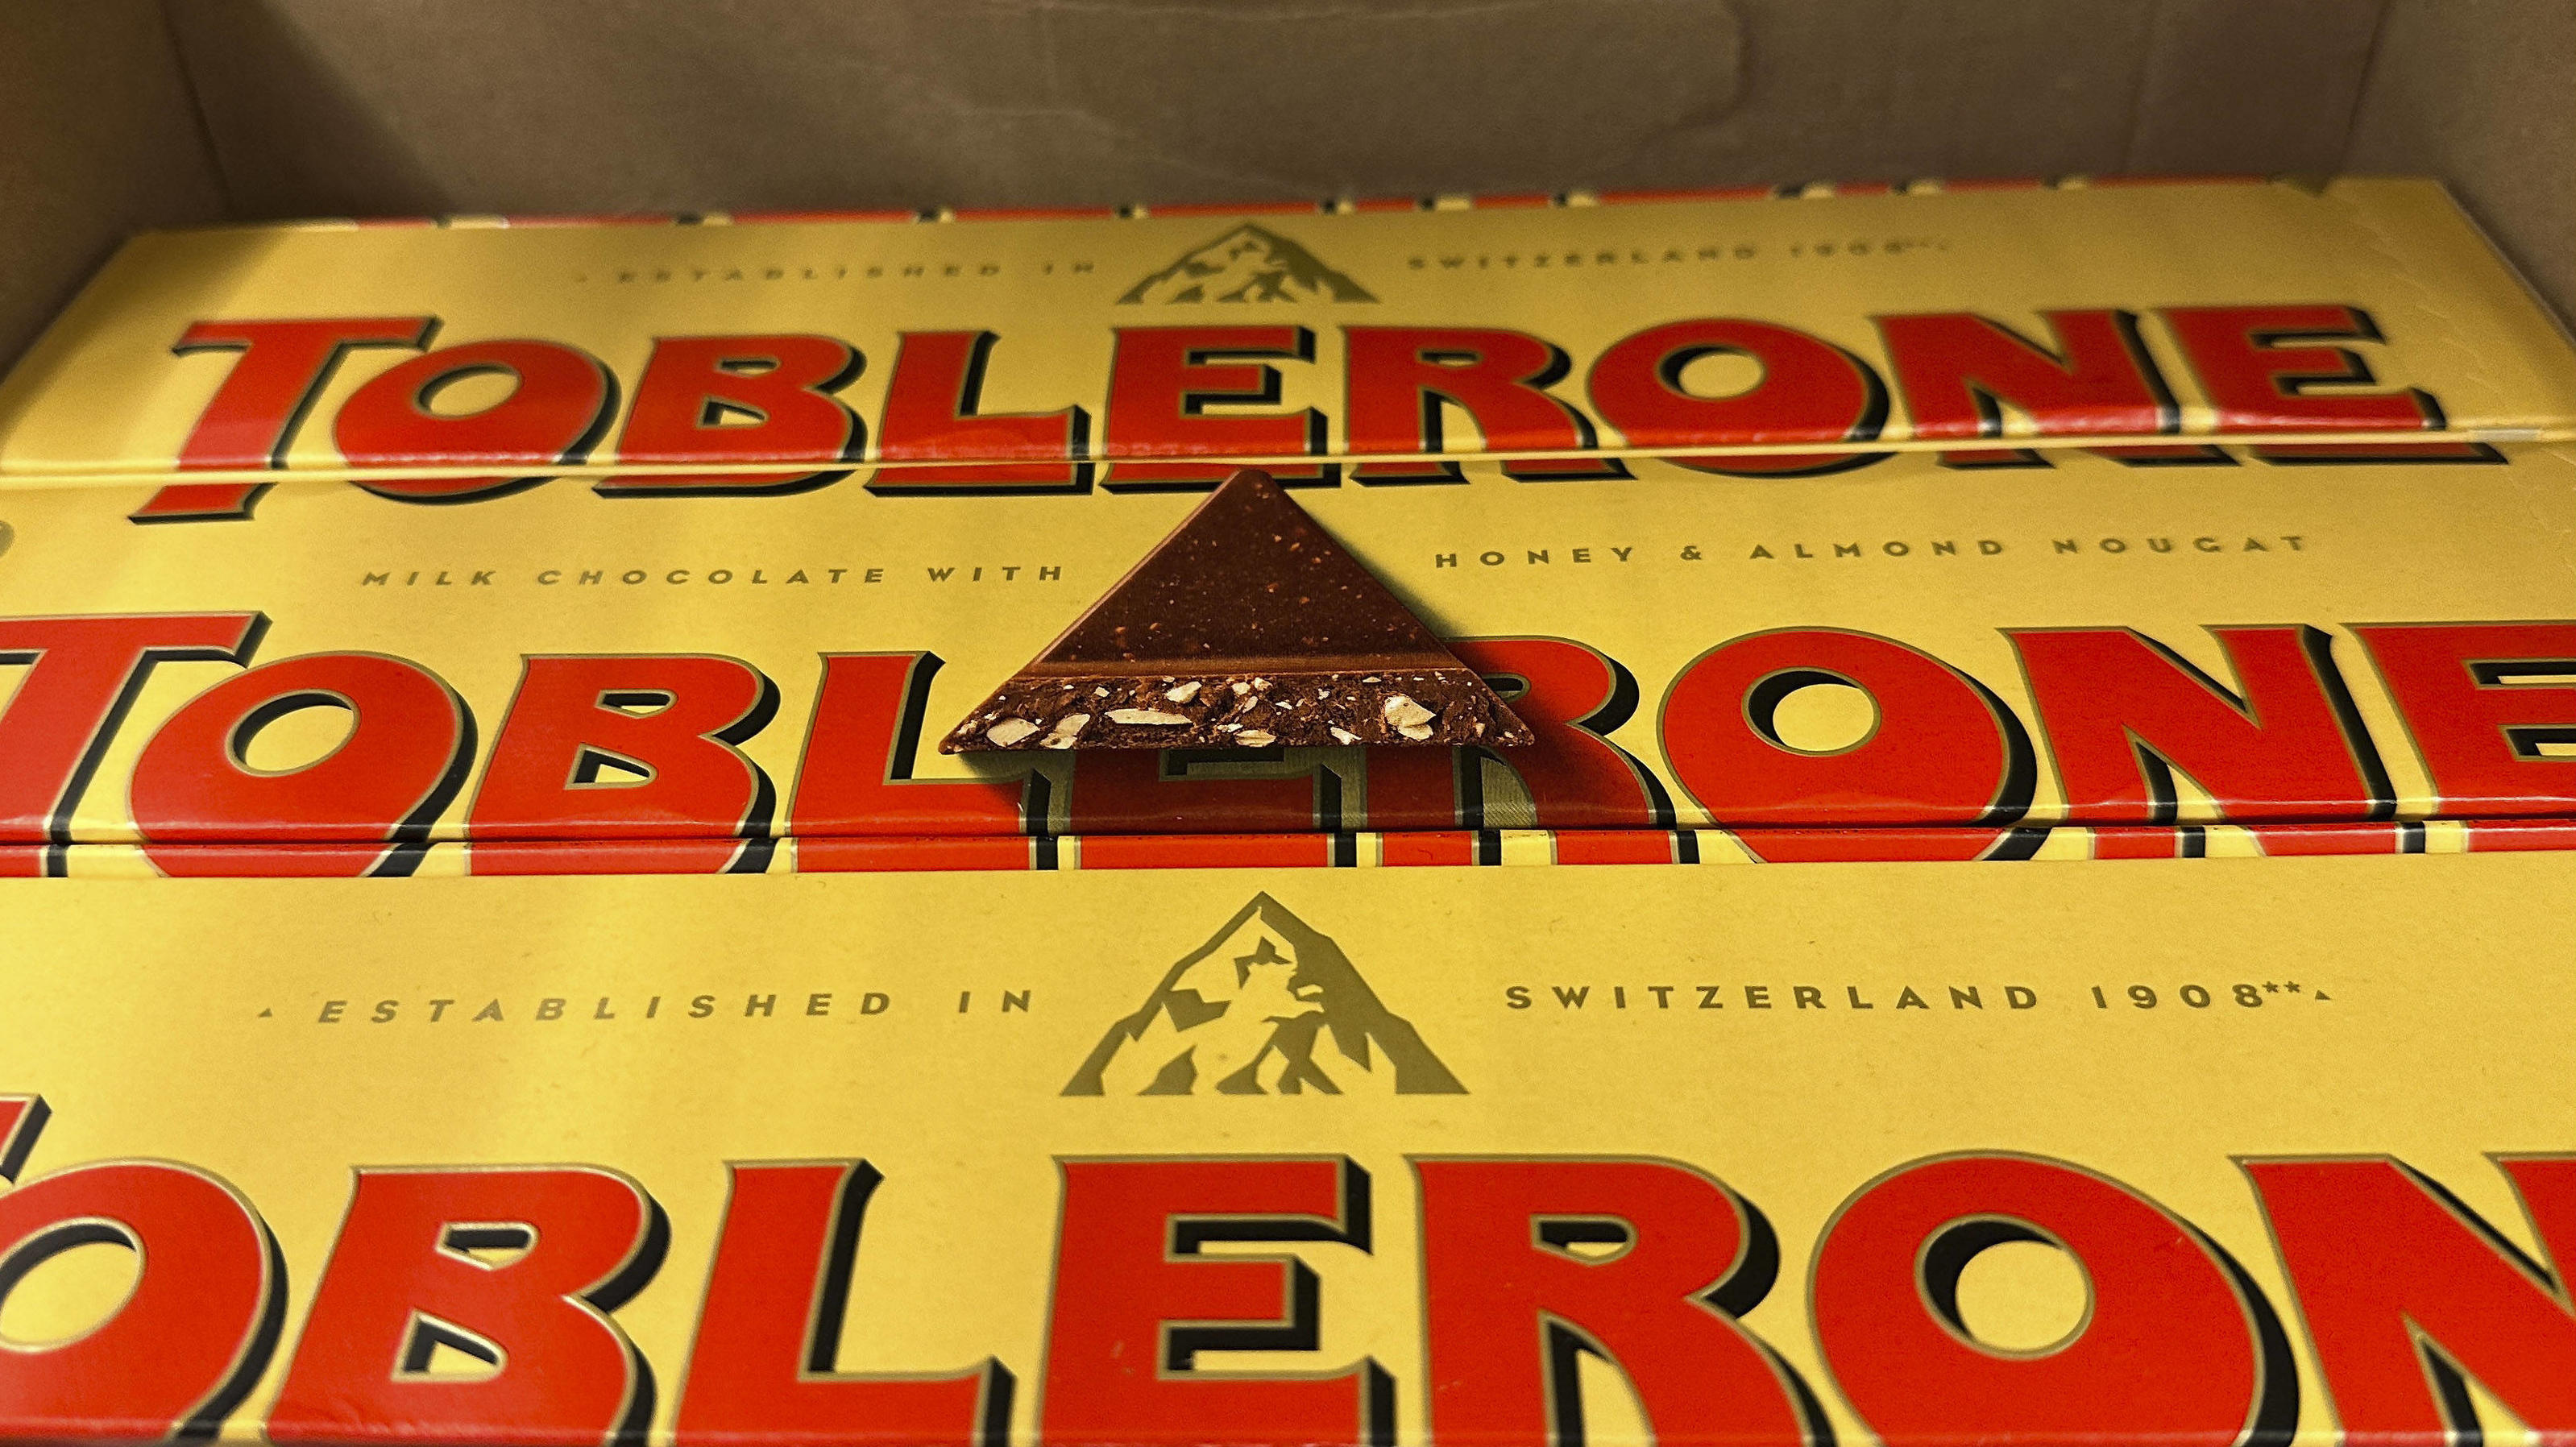 Die neue Toblerone-Verpackung ist in der Mitte. Der Vorher-Nachher-Vergleich zeigt: Das Matterhorn ist verschwunden, stattdessen befindet sich ein Toblerone-Dreieck auf der Verpackung.